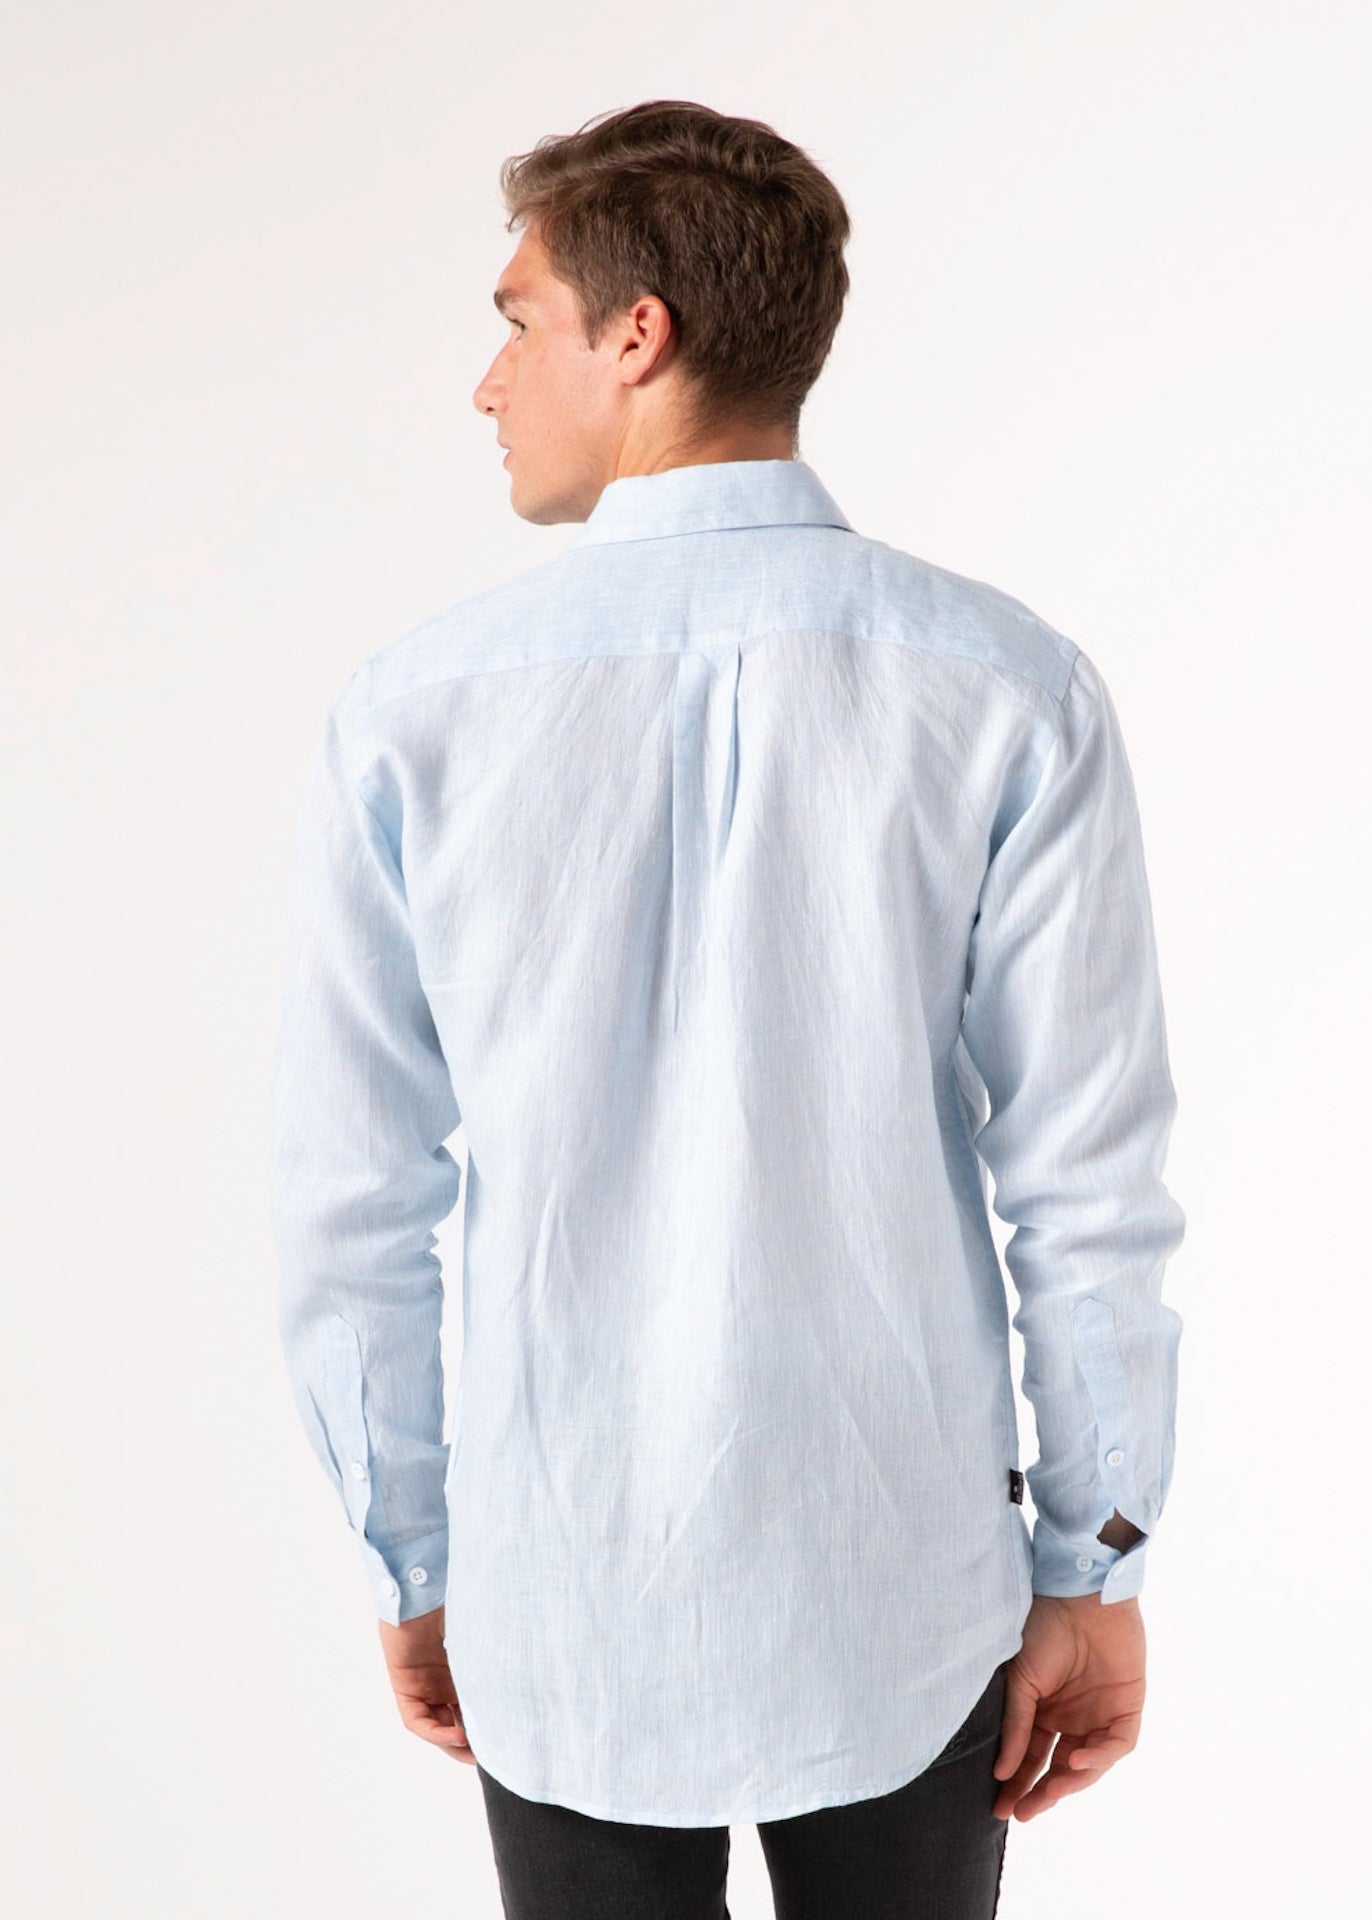 Capri Blue - Long Sleeve Italian Linen Shirt - Mr. Linen Co Mr. Linen CO